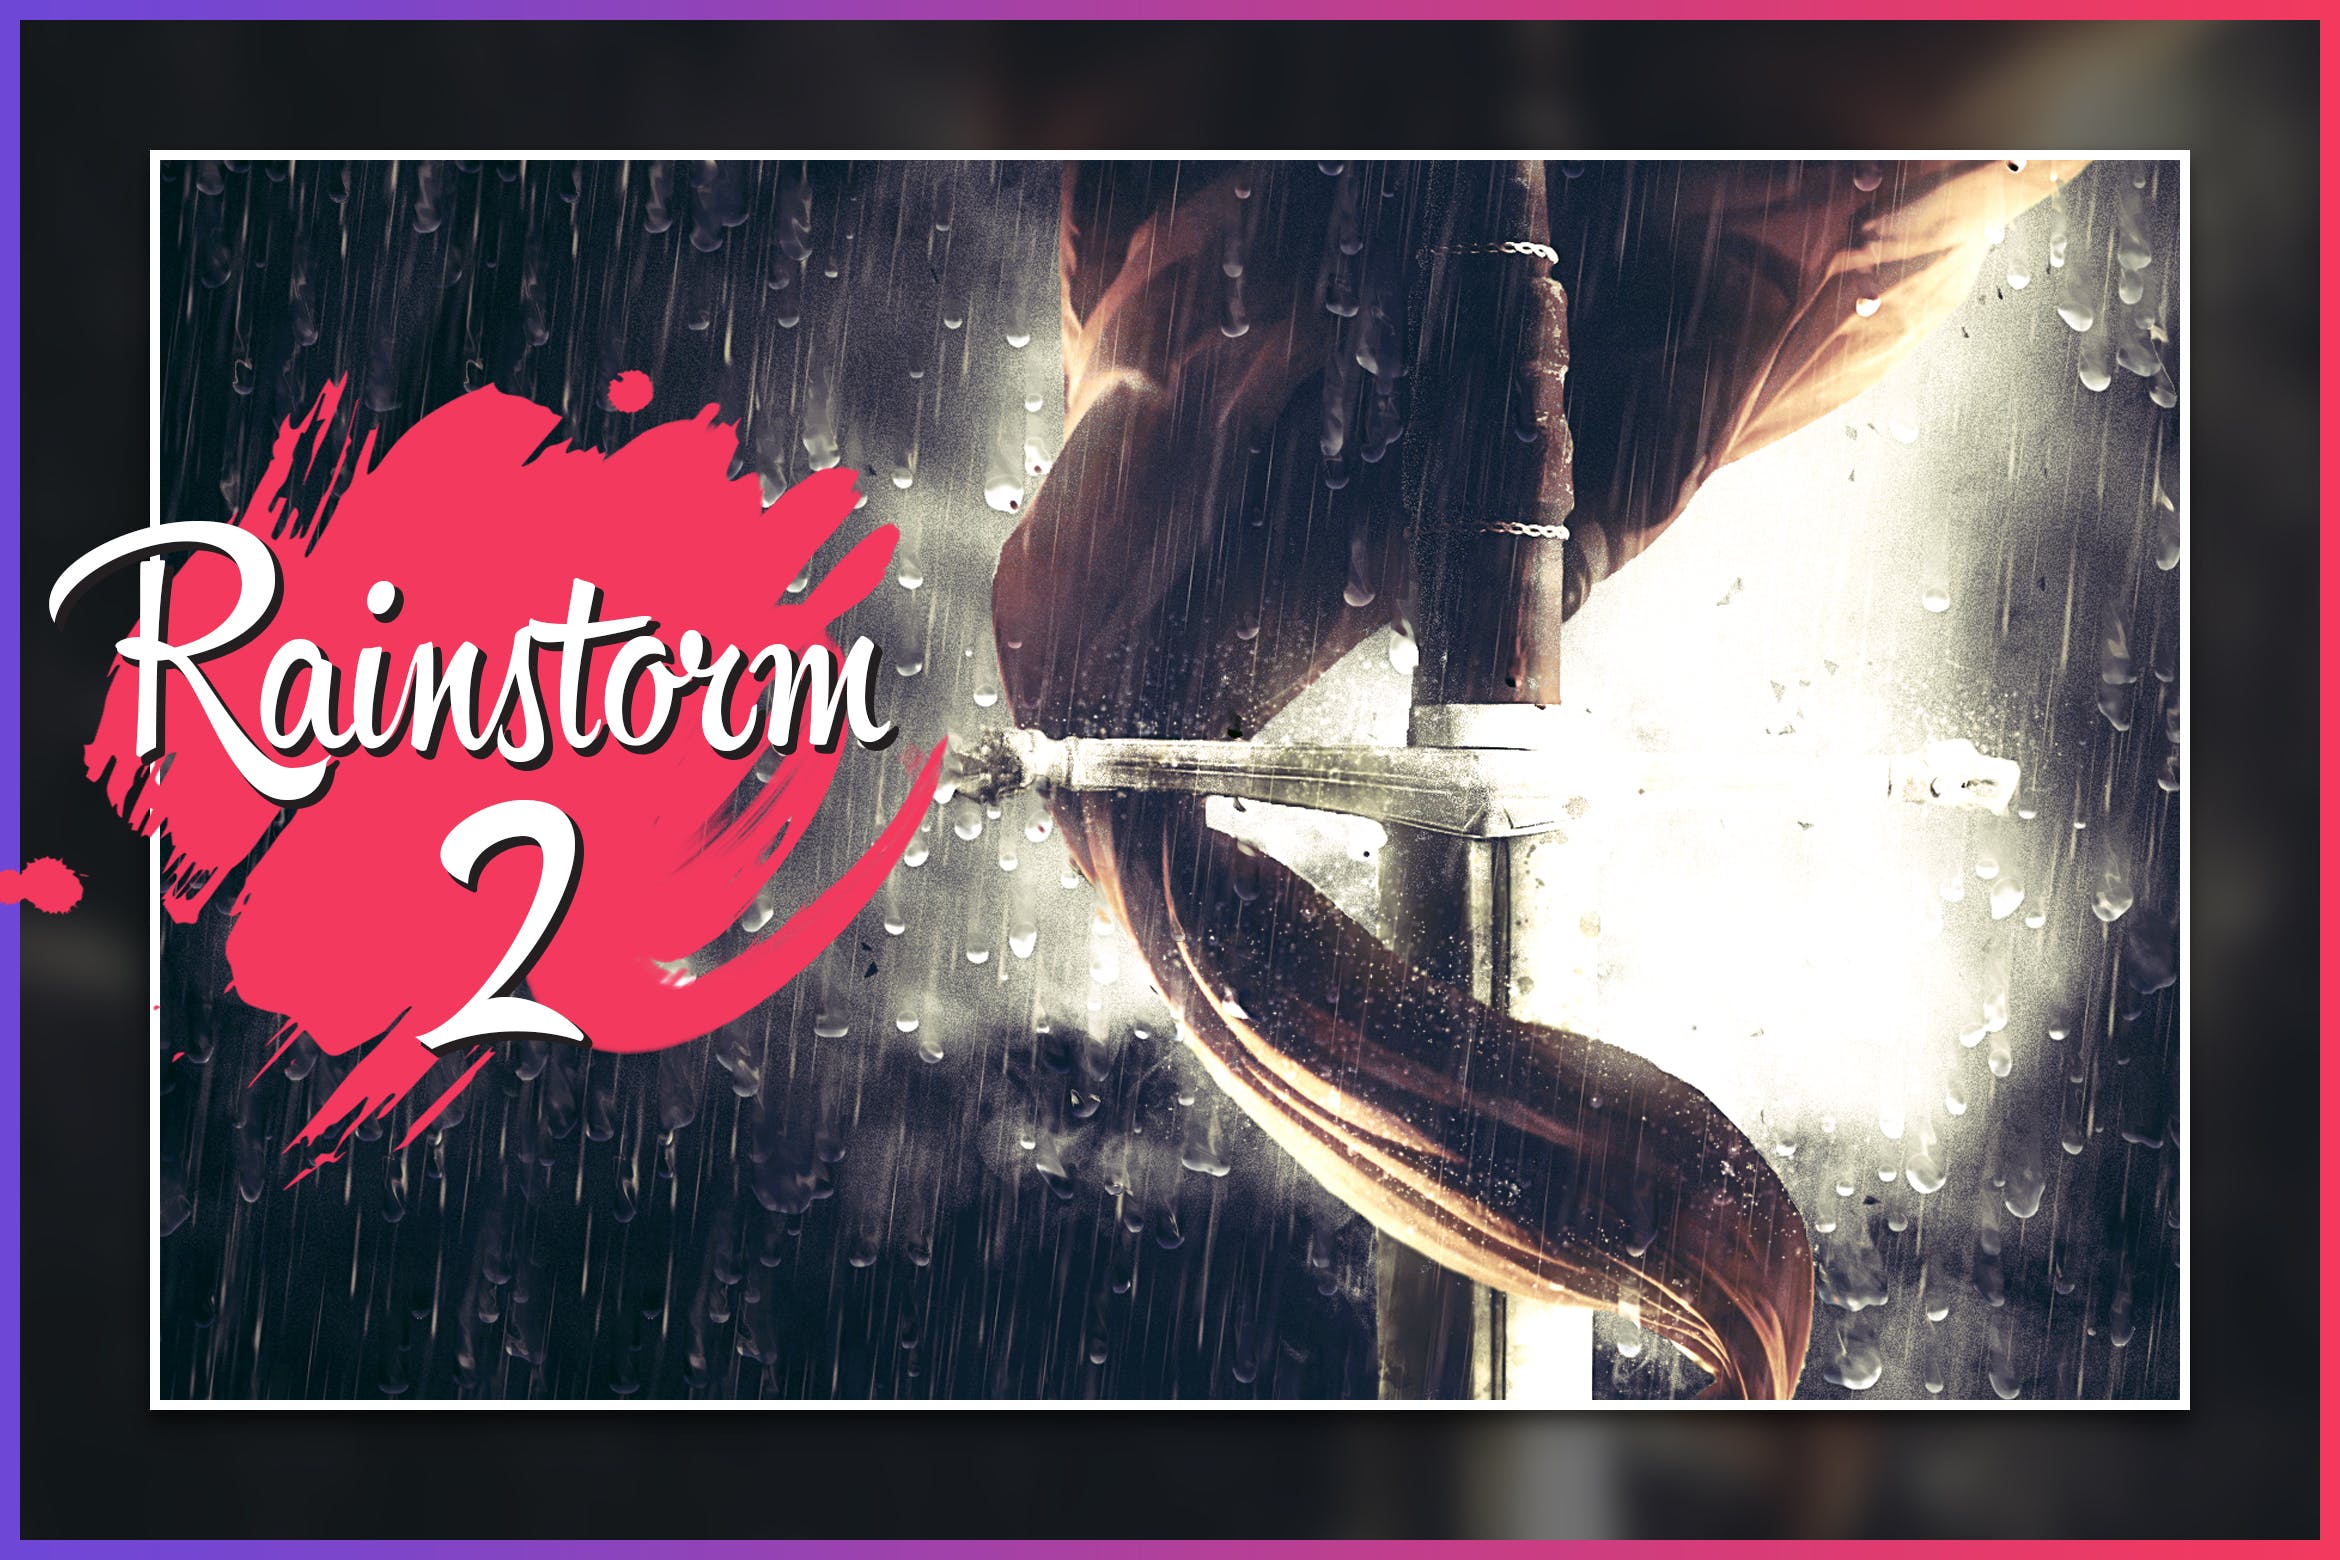 暴风雨照片背景特效素材库精选PS动作 Rainstorm 2 CS4+ Photoshop Action插图